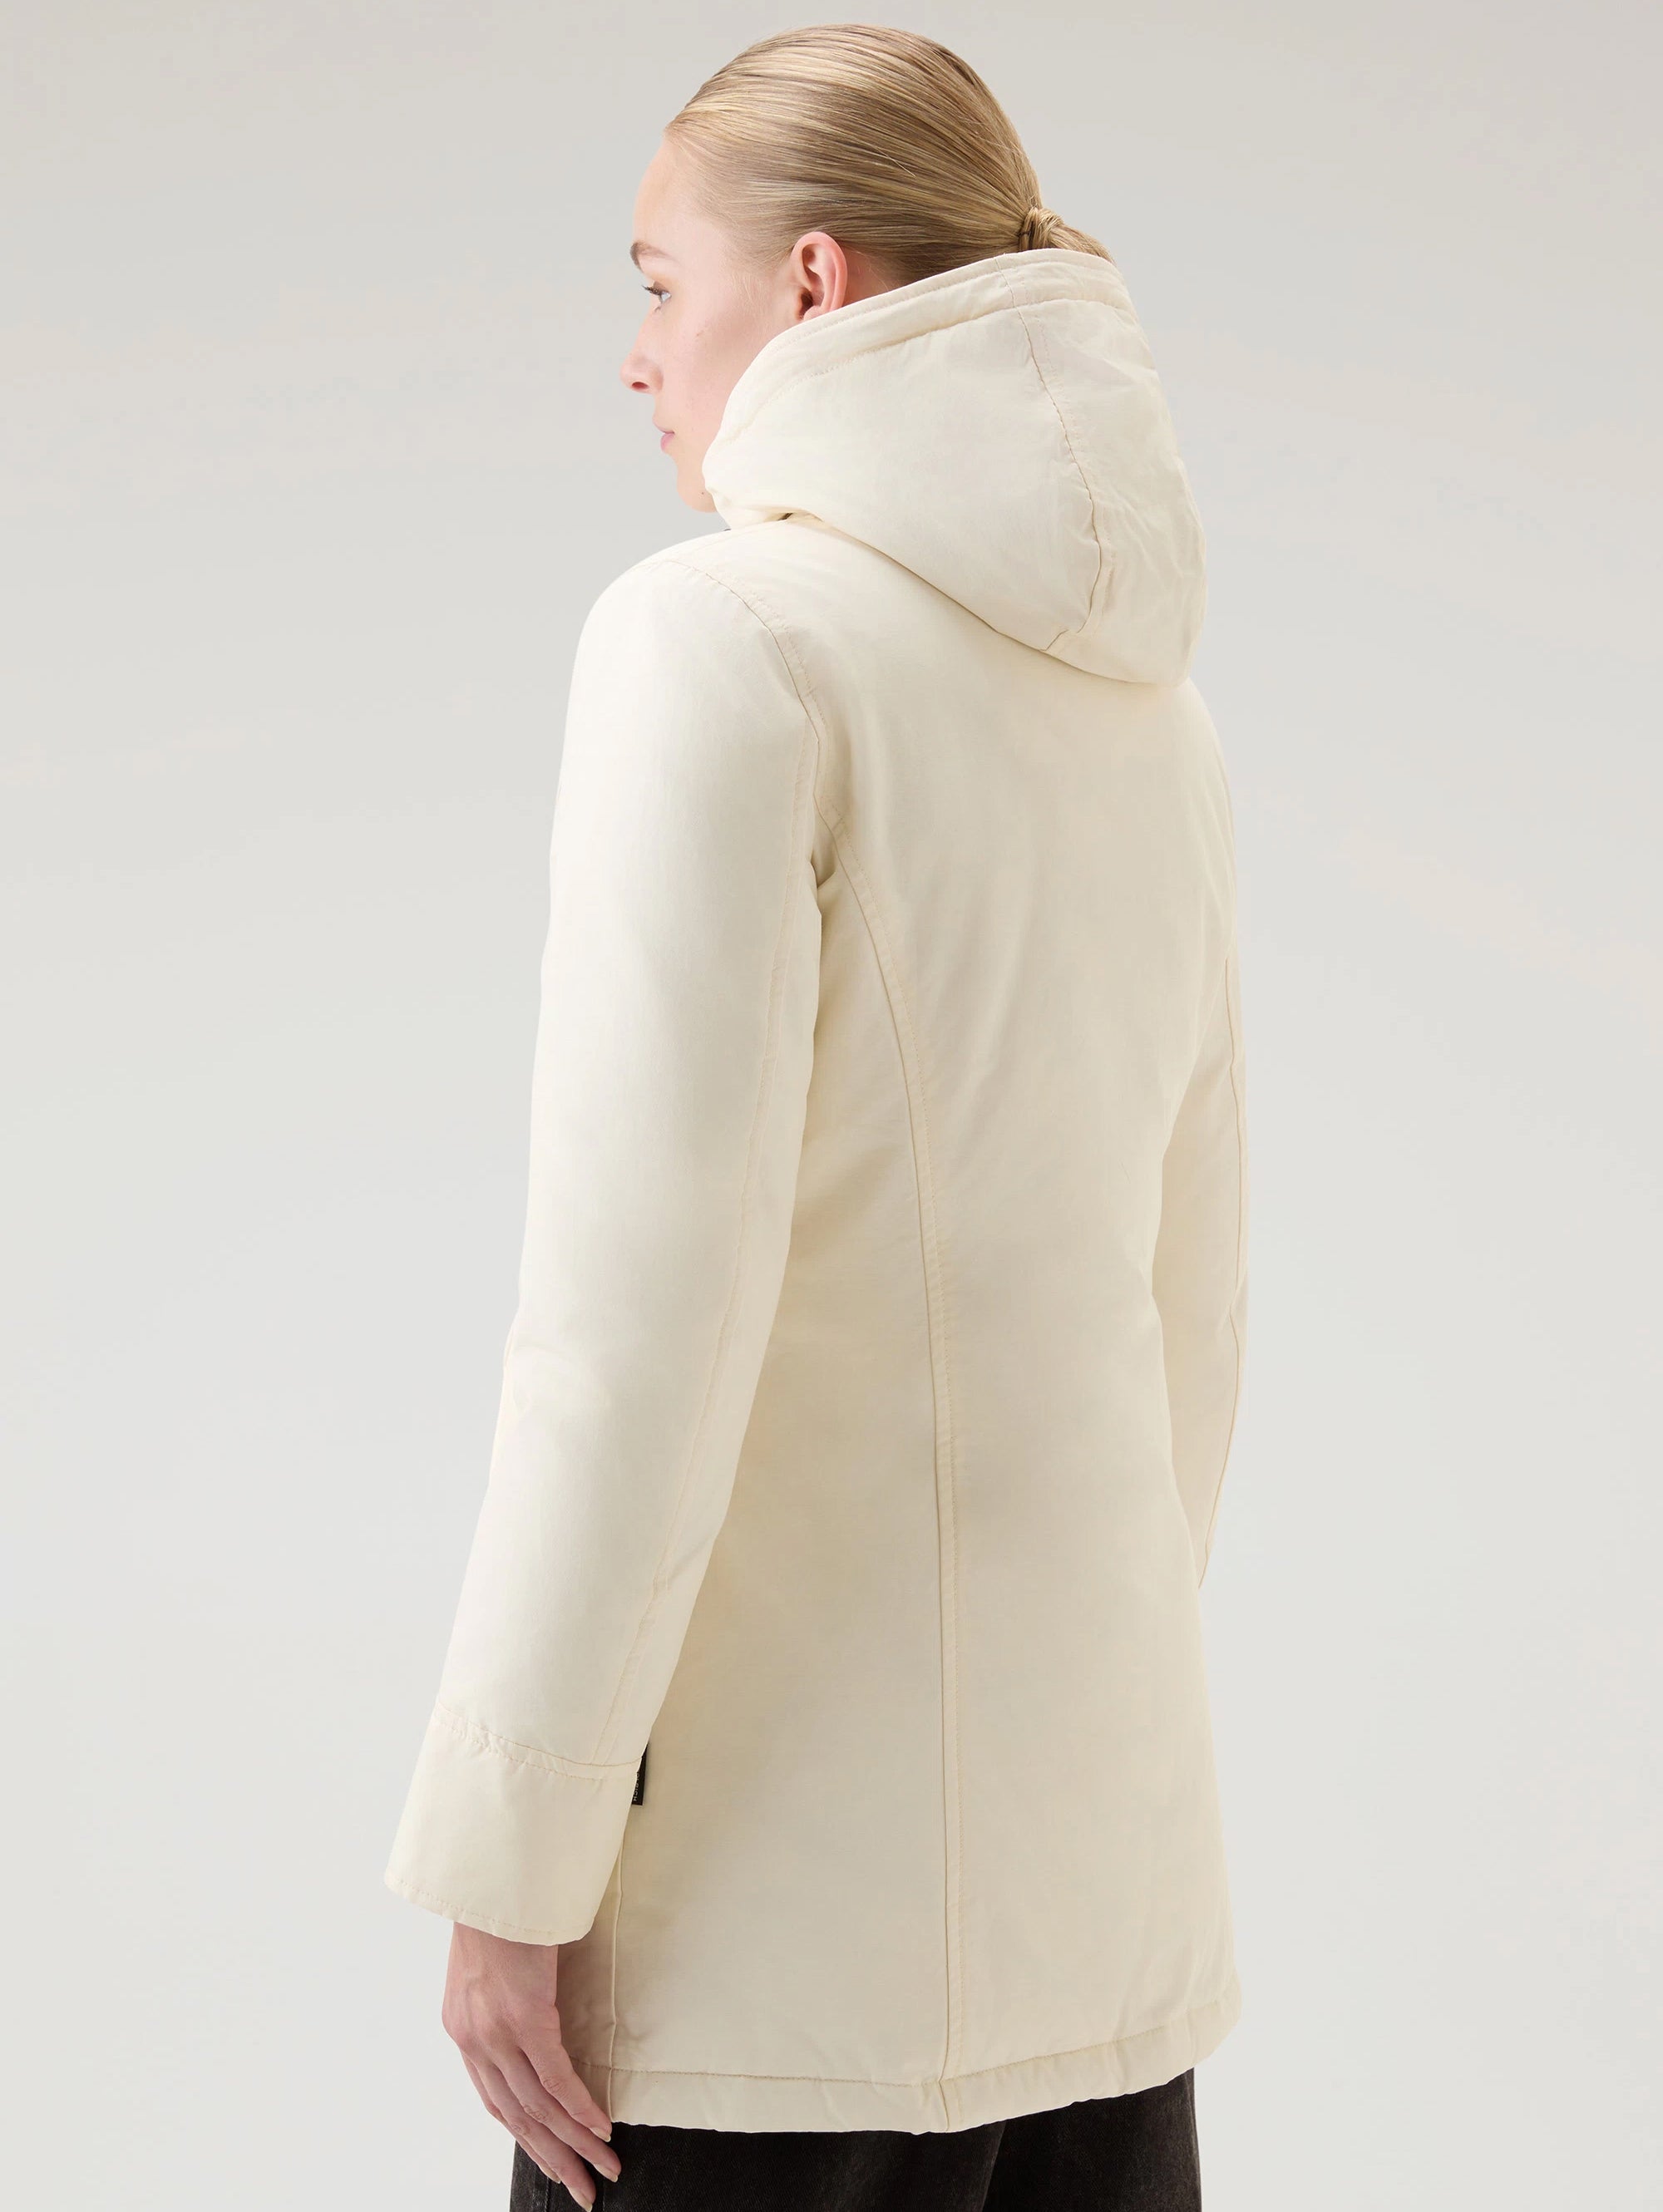 Parka-Jacke mit Kapuze in weißem Waschbär